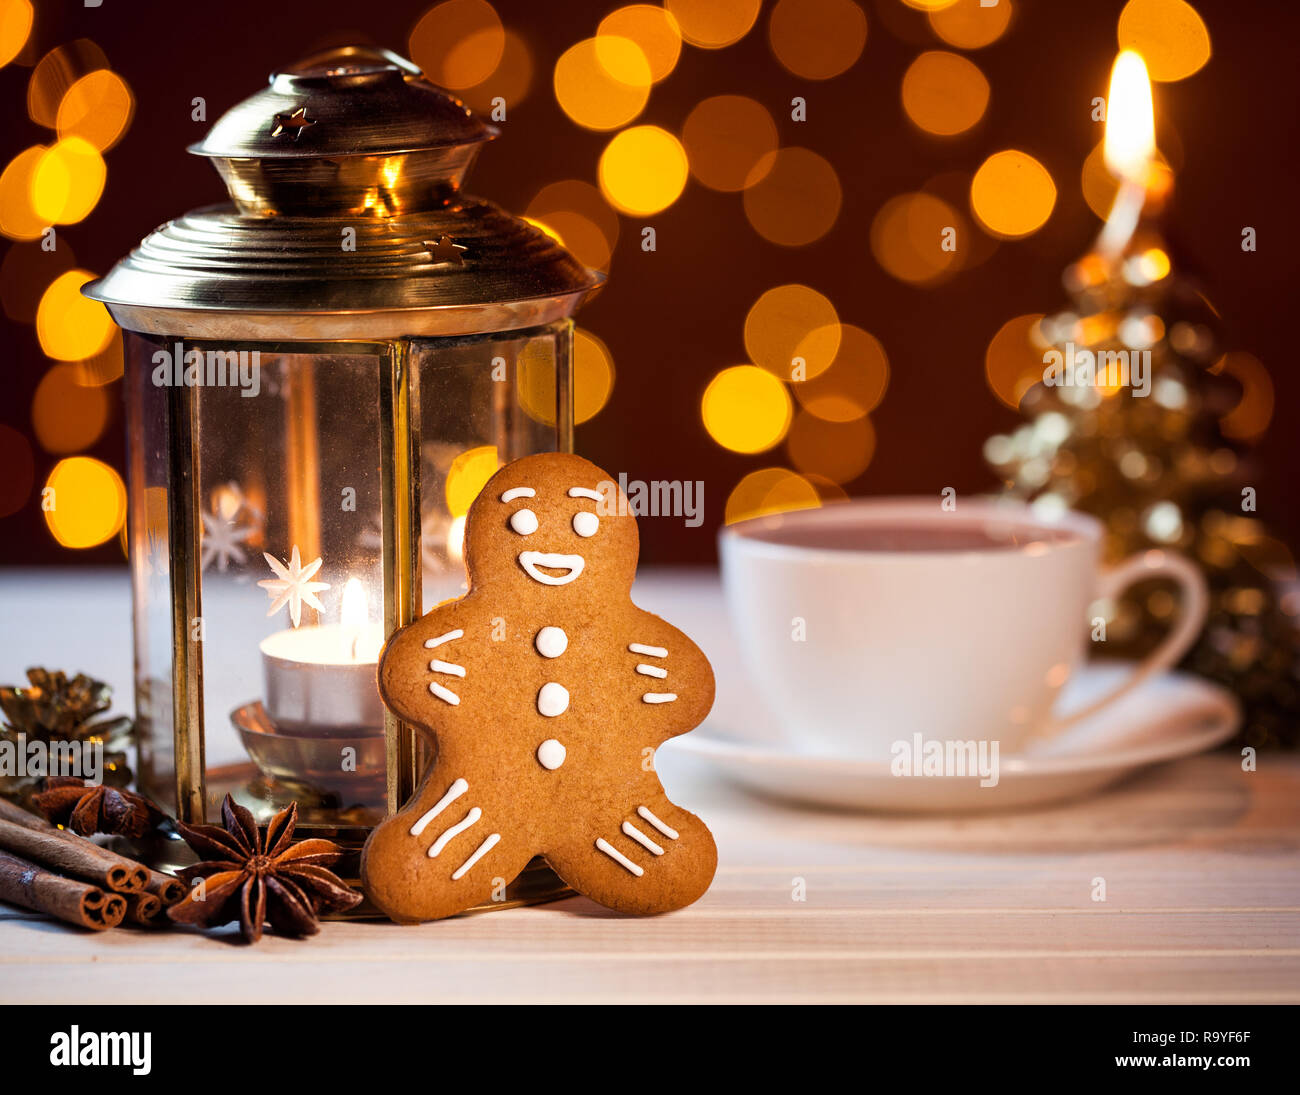 Gingerbread cerca de linterna, las especies y la taza de café a bokeh de fondo amarillo Foto de stock